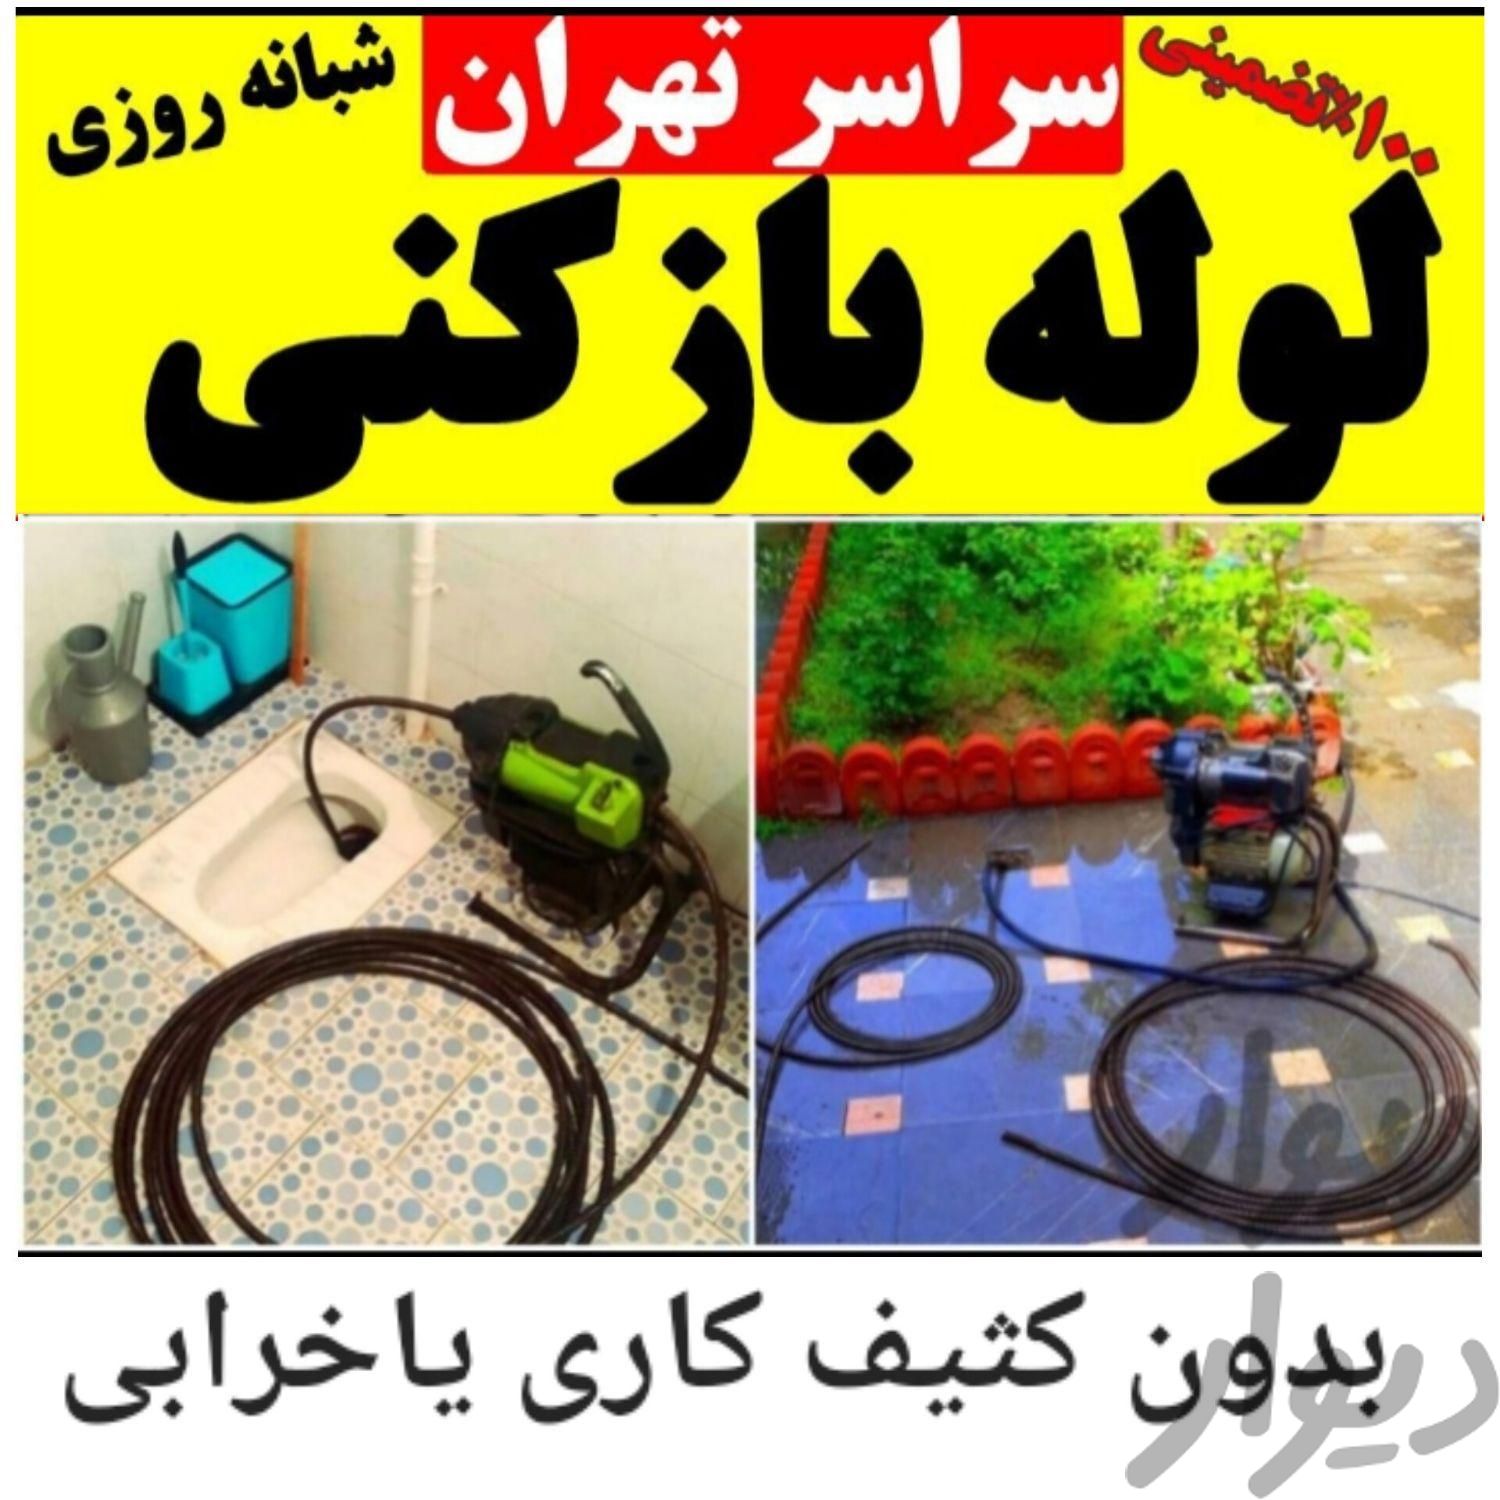 لوله بازکن در وحیدیه تهران نو نیروهوایی پیروزی۲۴س|خدمات پیشه و مهارت|تهران, تهران‌نو|دیوار